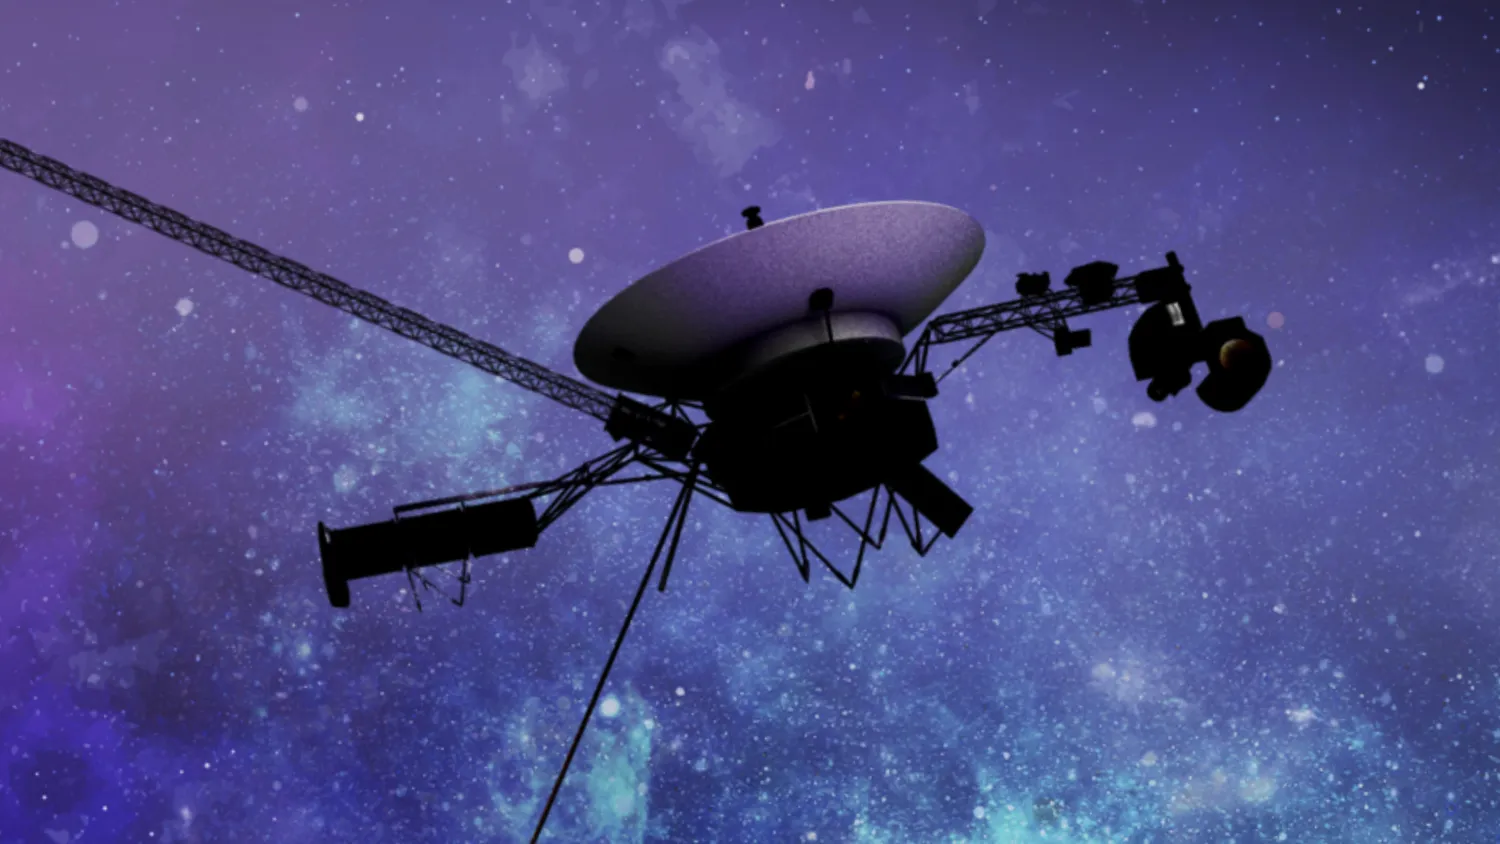 Mehr über den Artikel erfahren Endlich wissen wir, warum die NASA-Raumsonde Voyager 1 nicht mehr kommuniziert – Wissenschaftler arbeiten an einer Lösung